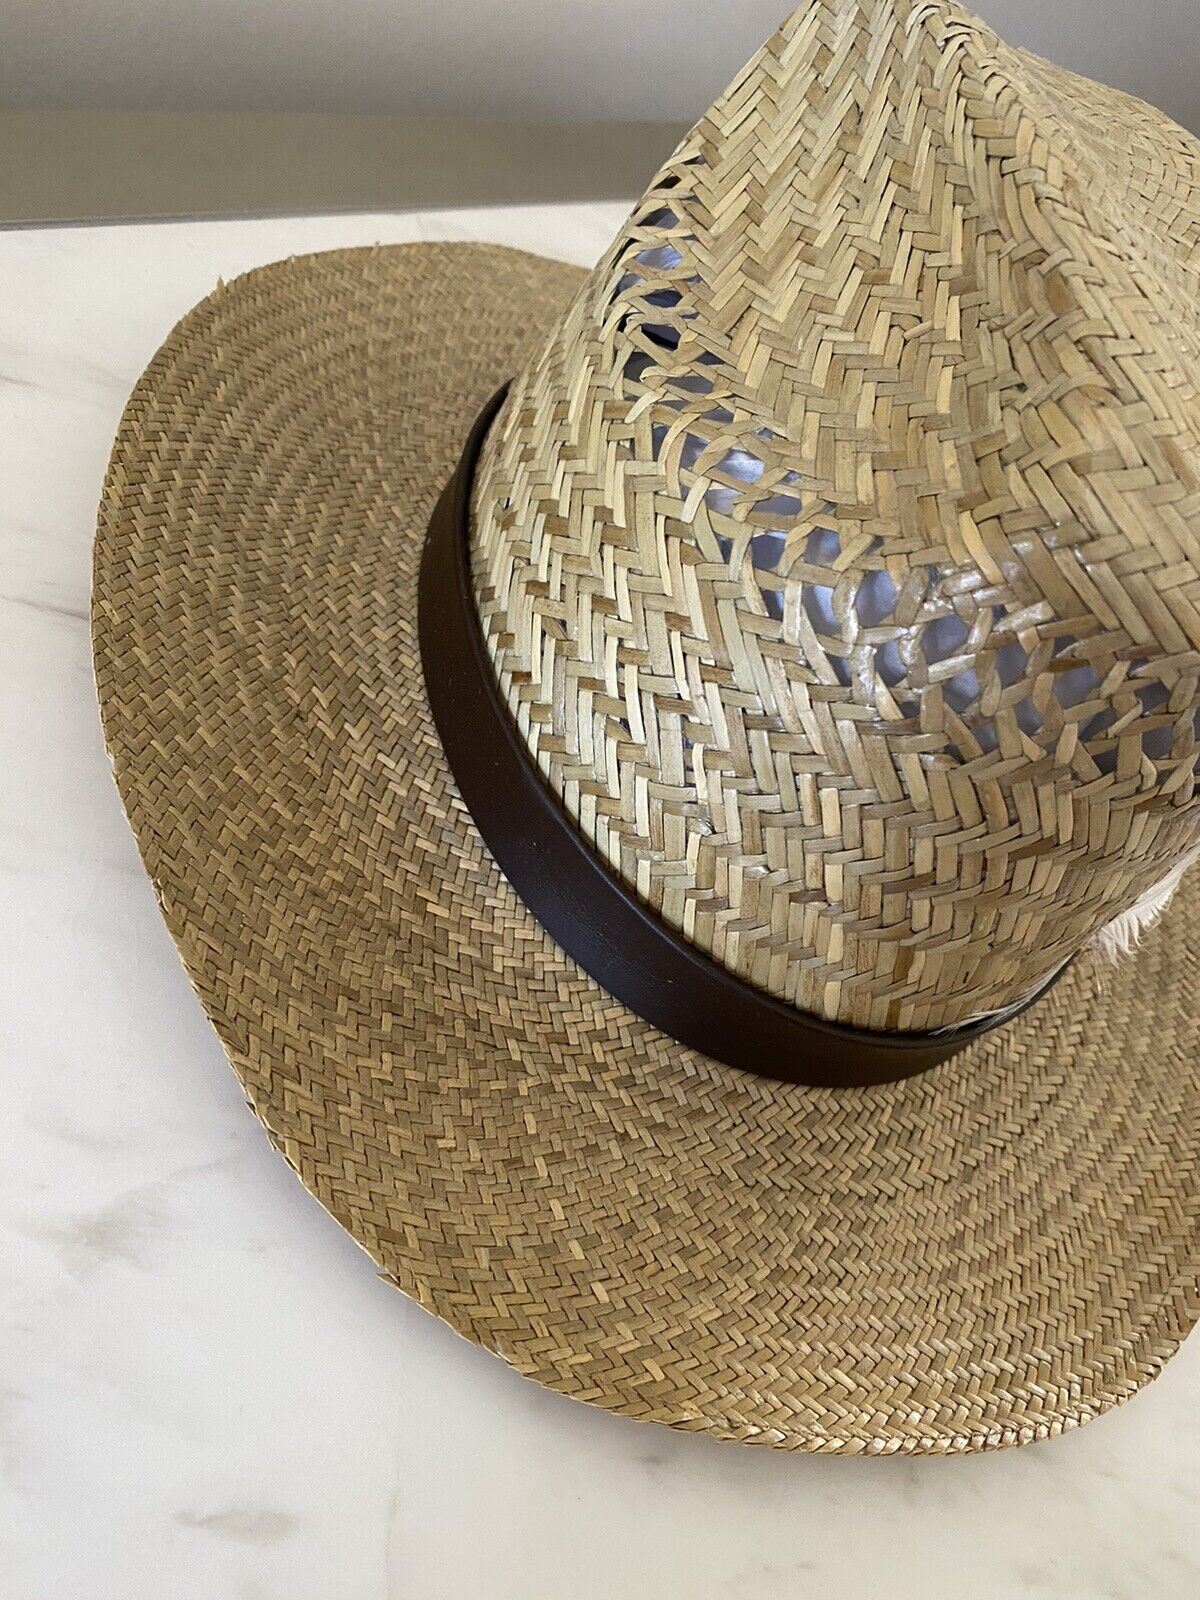 NWT 895 долларов США Соломенная ковбойская шляпа Saint Laurent с кожей и перьями Коричневая L